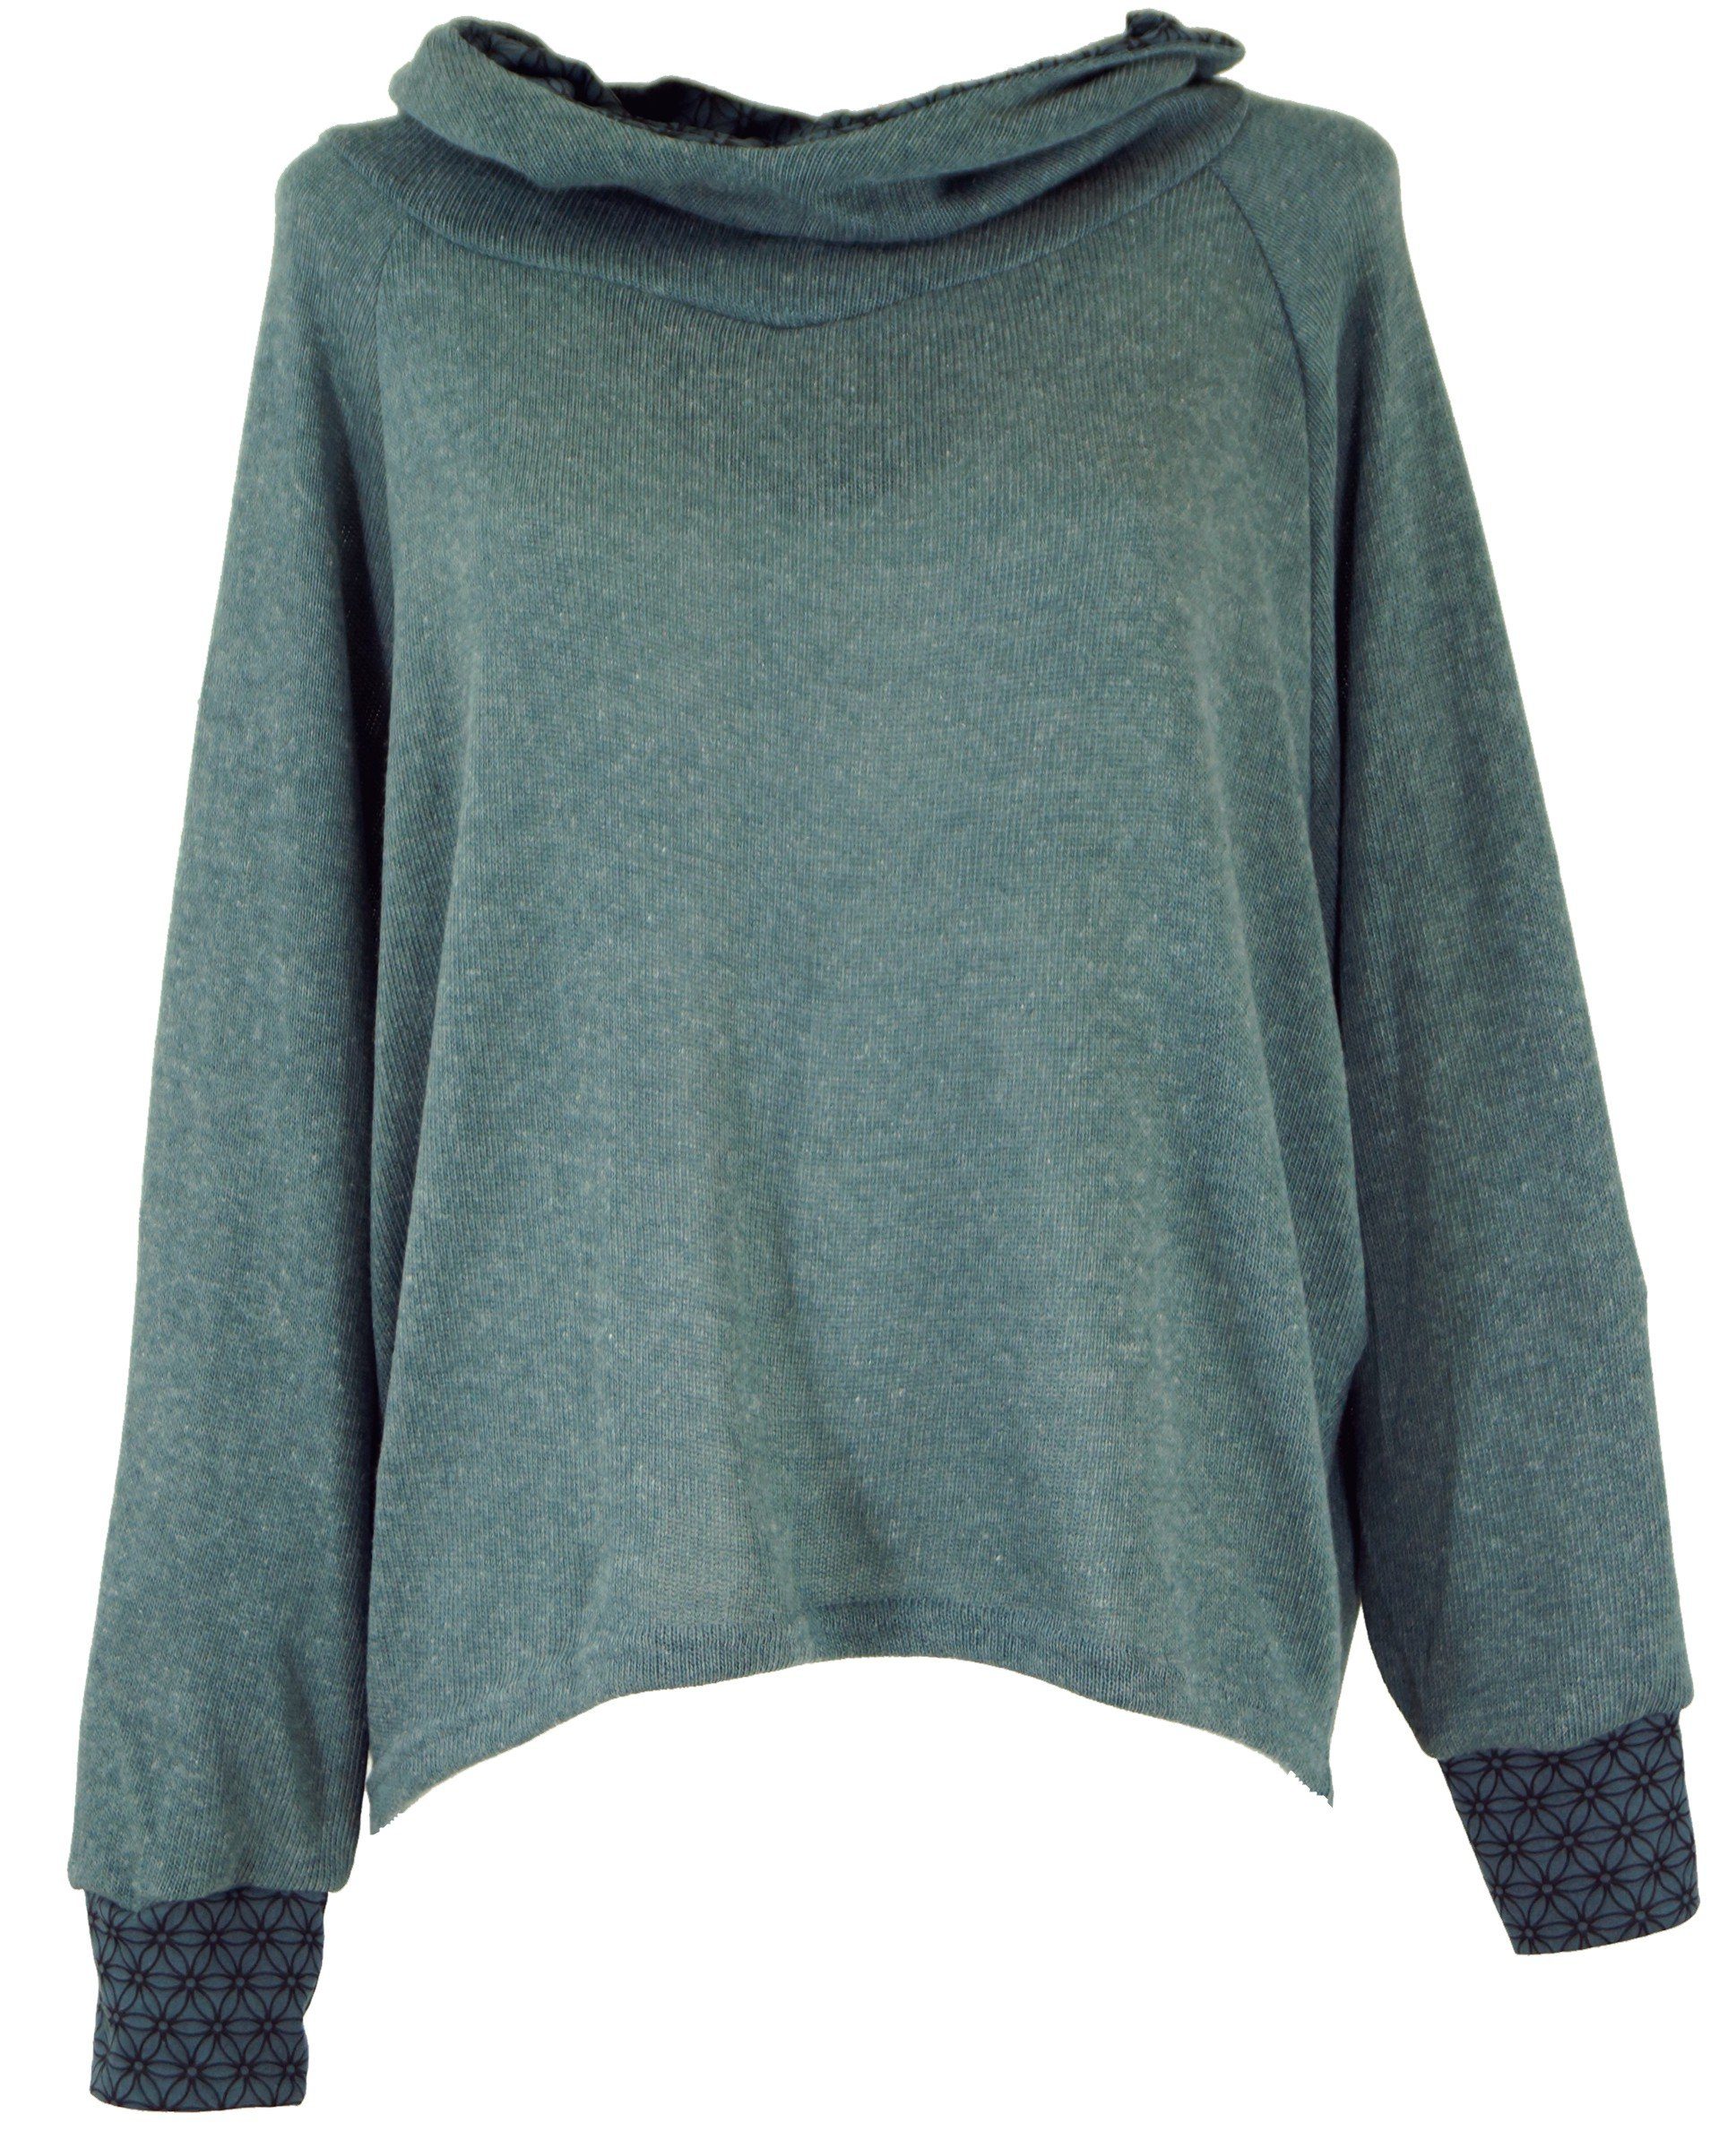 alternative -.. Hoody, Bekleidung Longsleeve Sweatshirt, Pullover, Kapuzenpullover Guru-Shop taubenblau